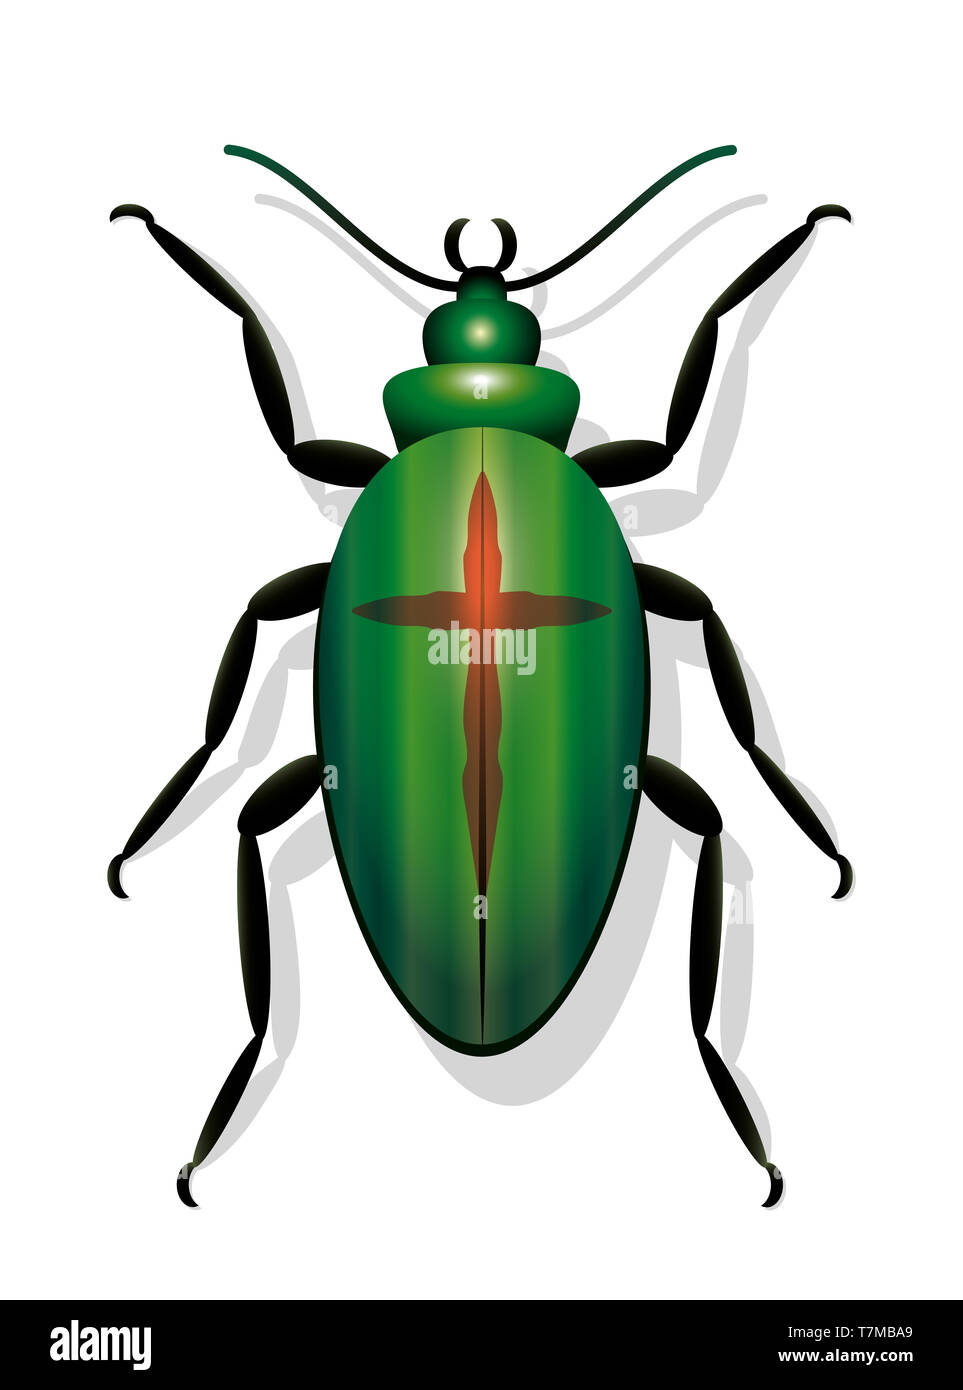 Käfer mit Kreuz, symbolisch für das Aussterben von Arten und zur Abnahme der Insektenpopulationen - Abbildung auf weißem Hintergrund. Stockfoto